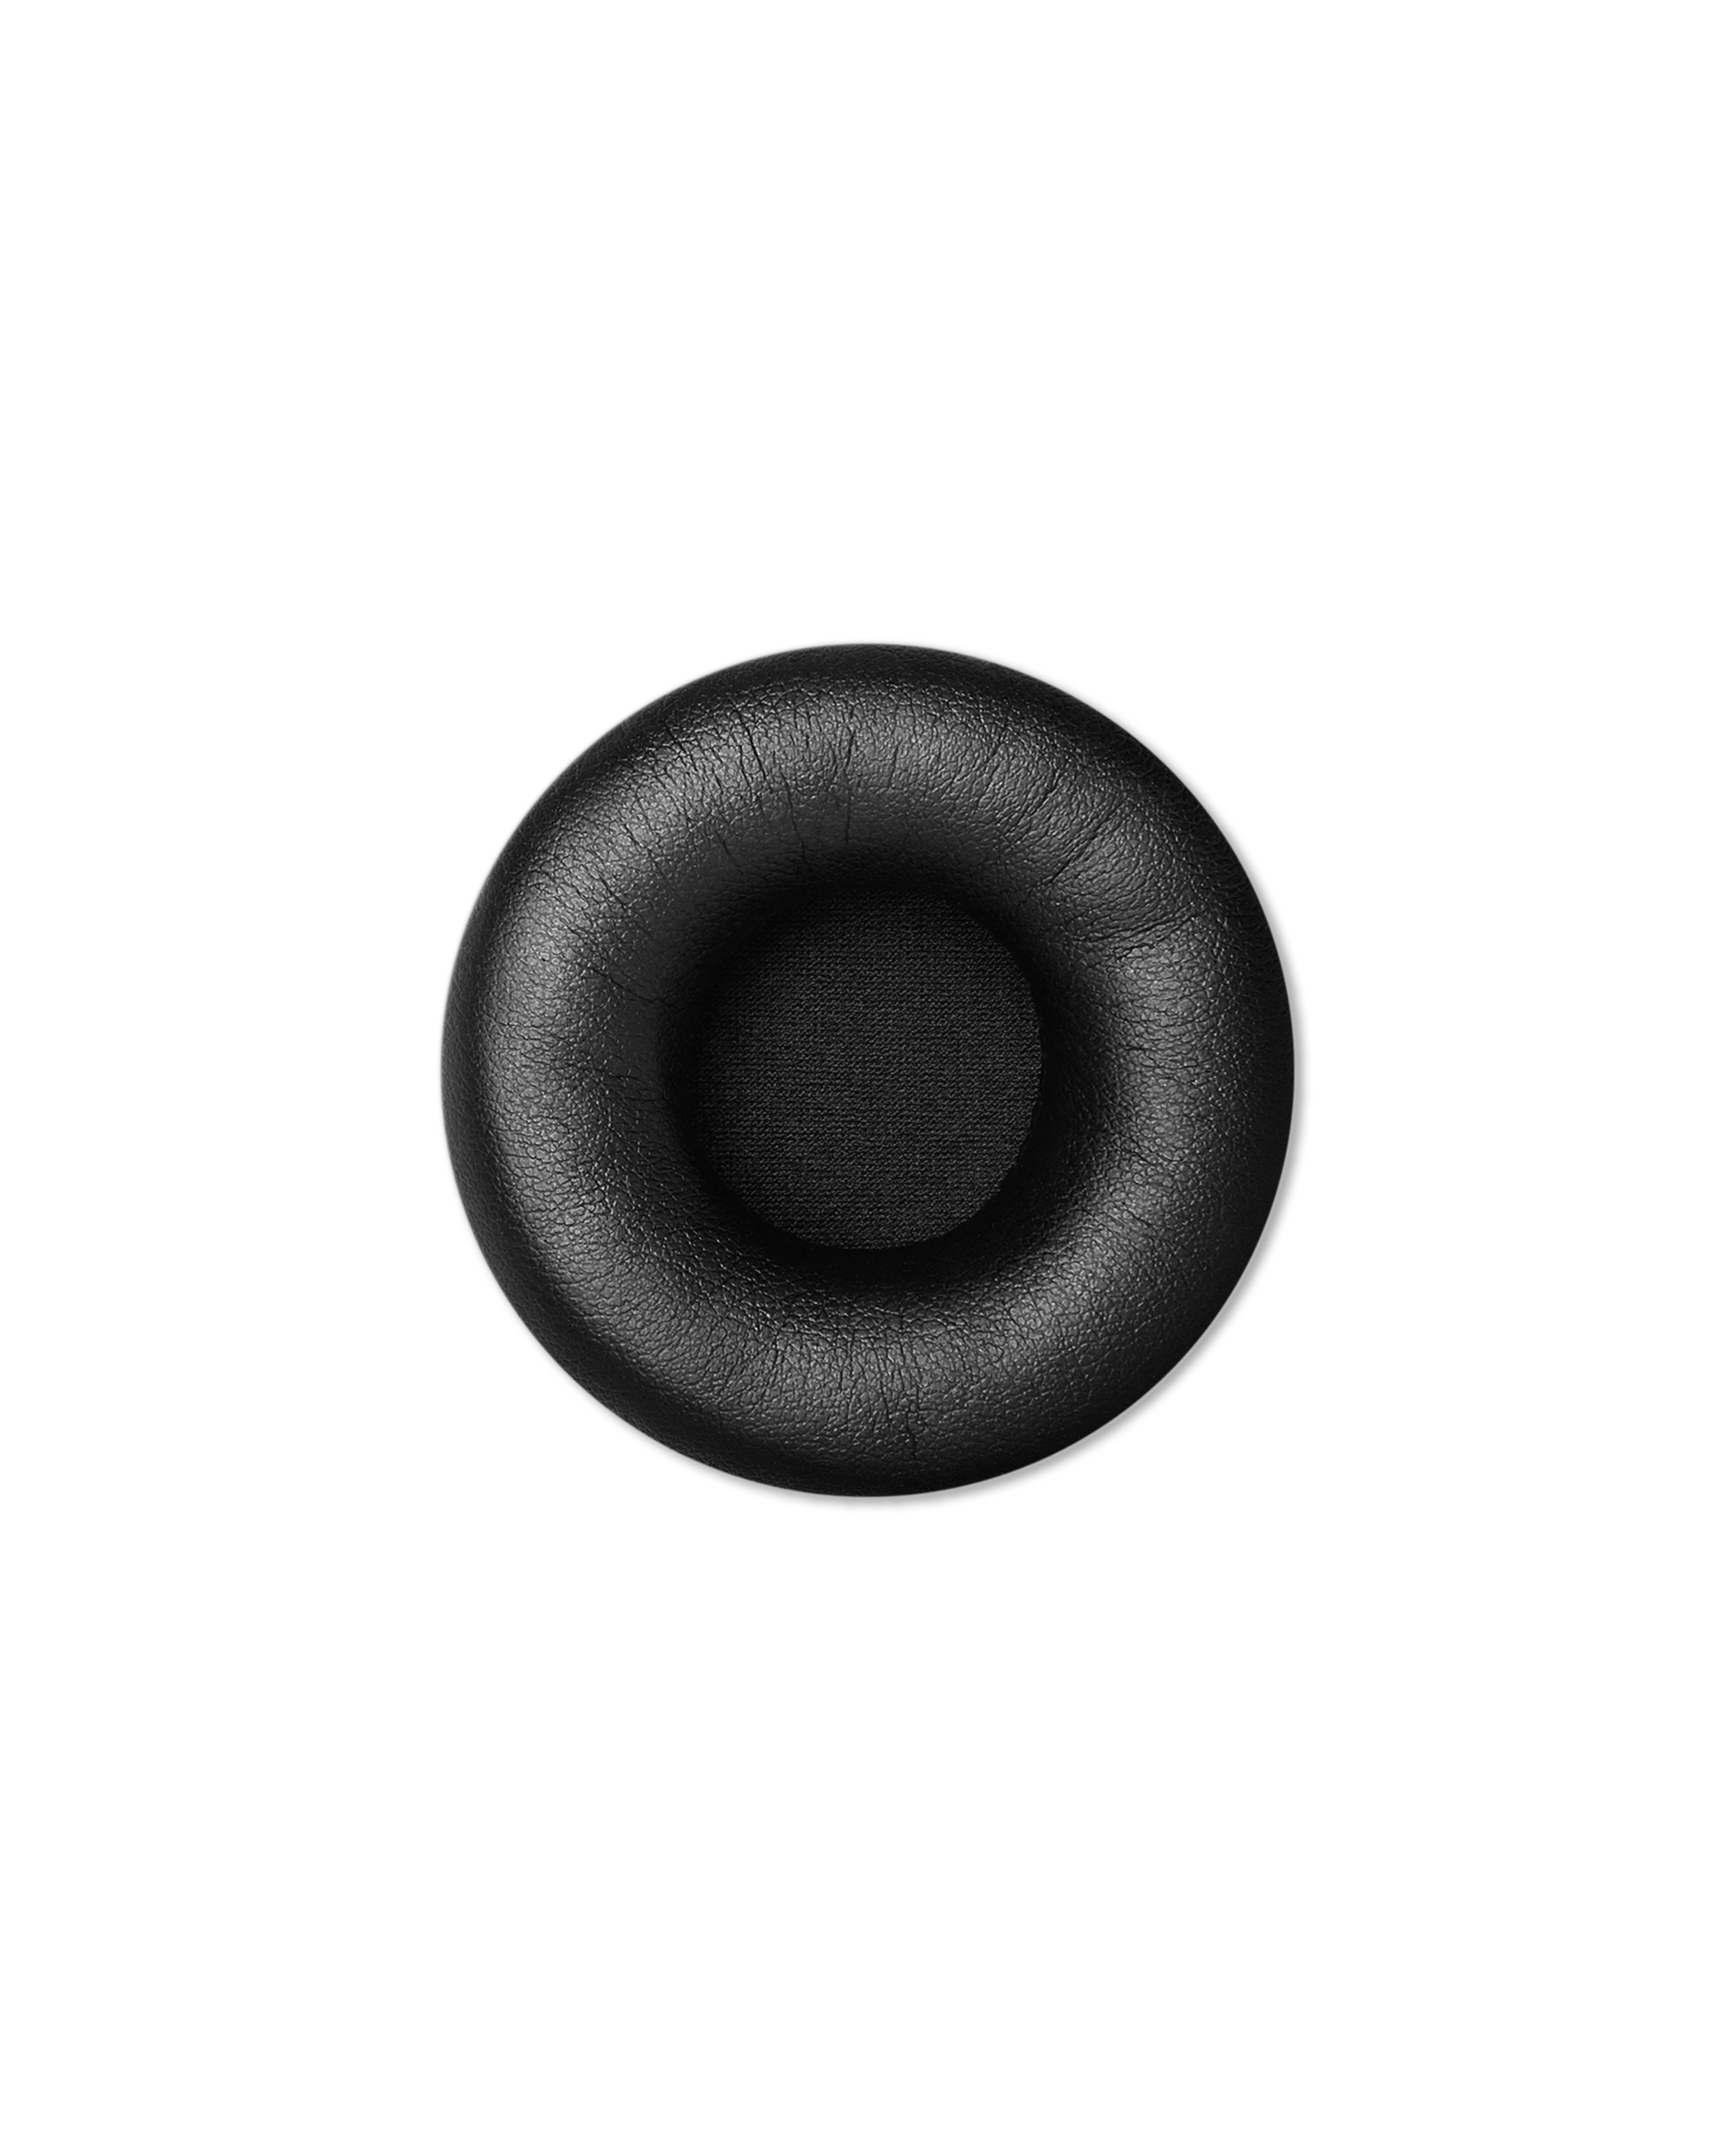 AIAIAI - E02 - On ear PU Leather - Black